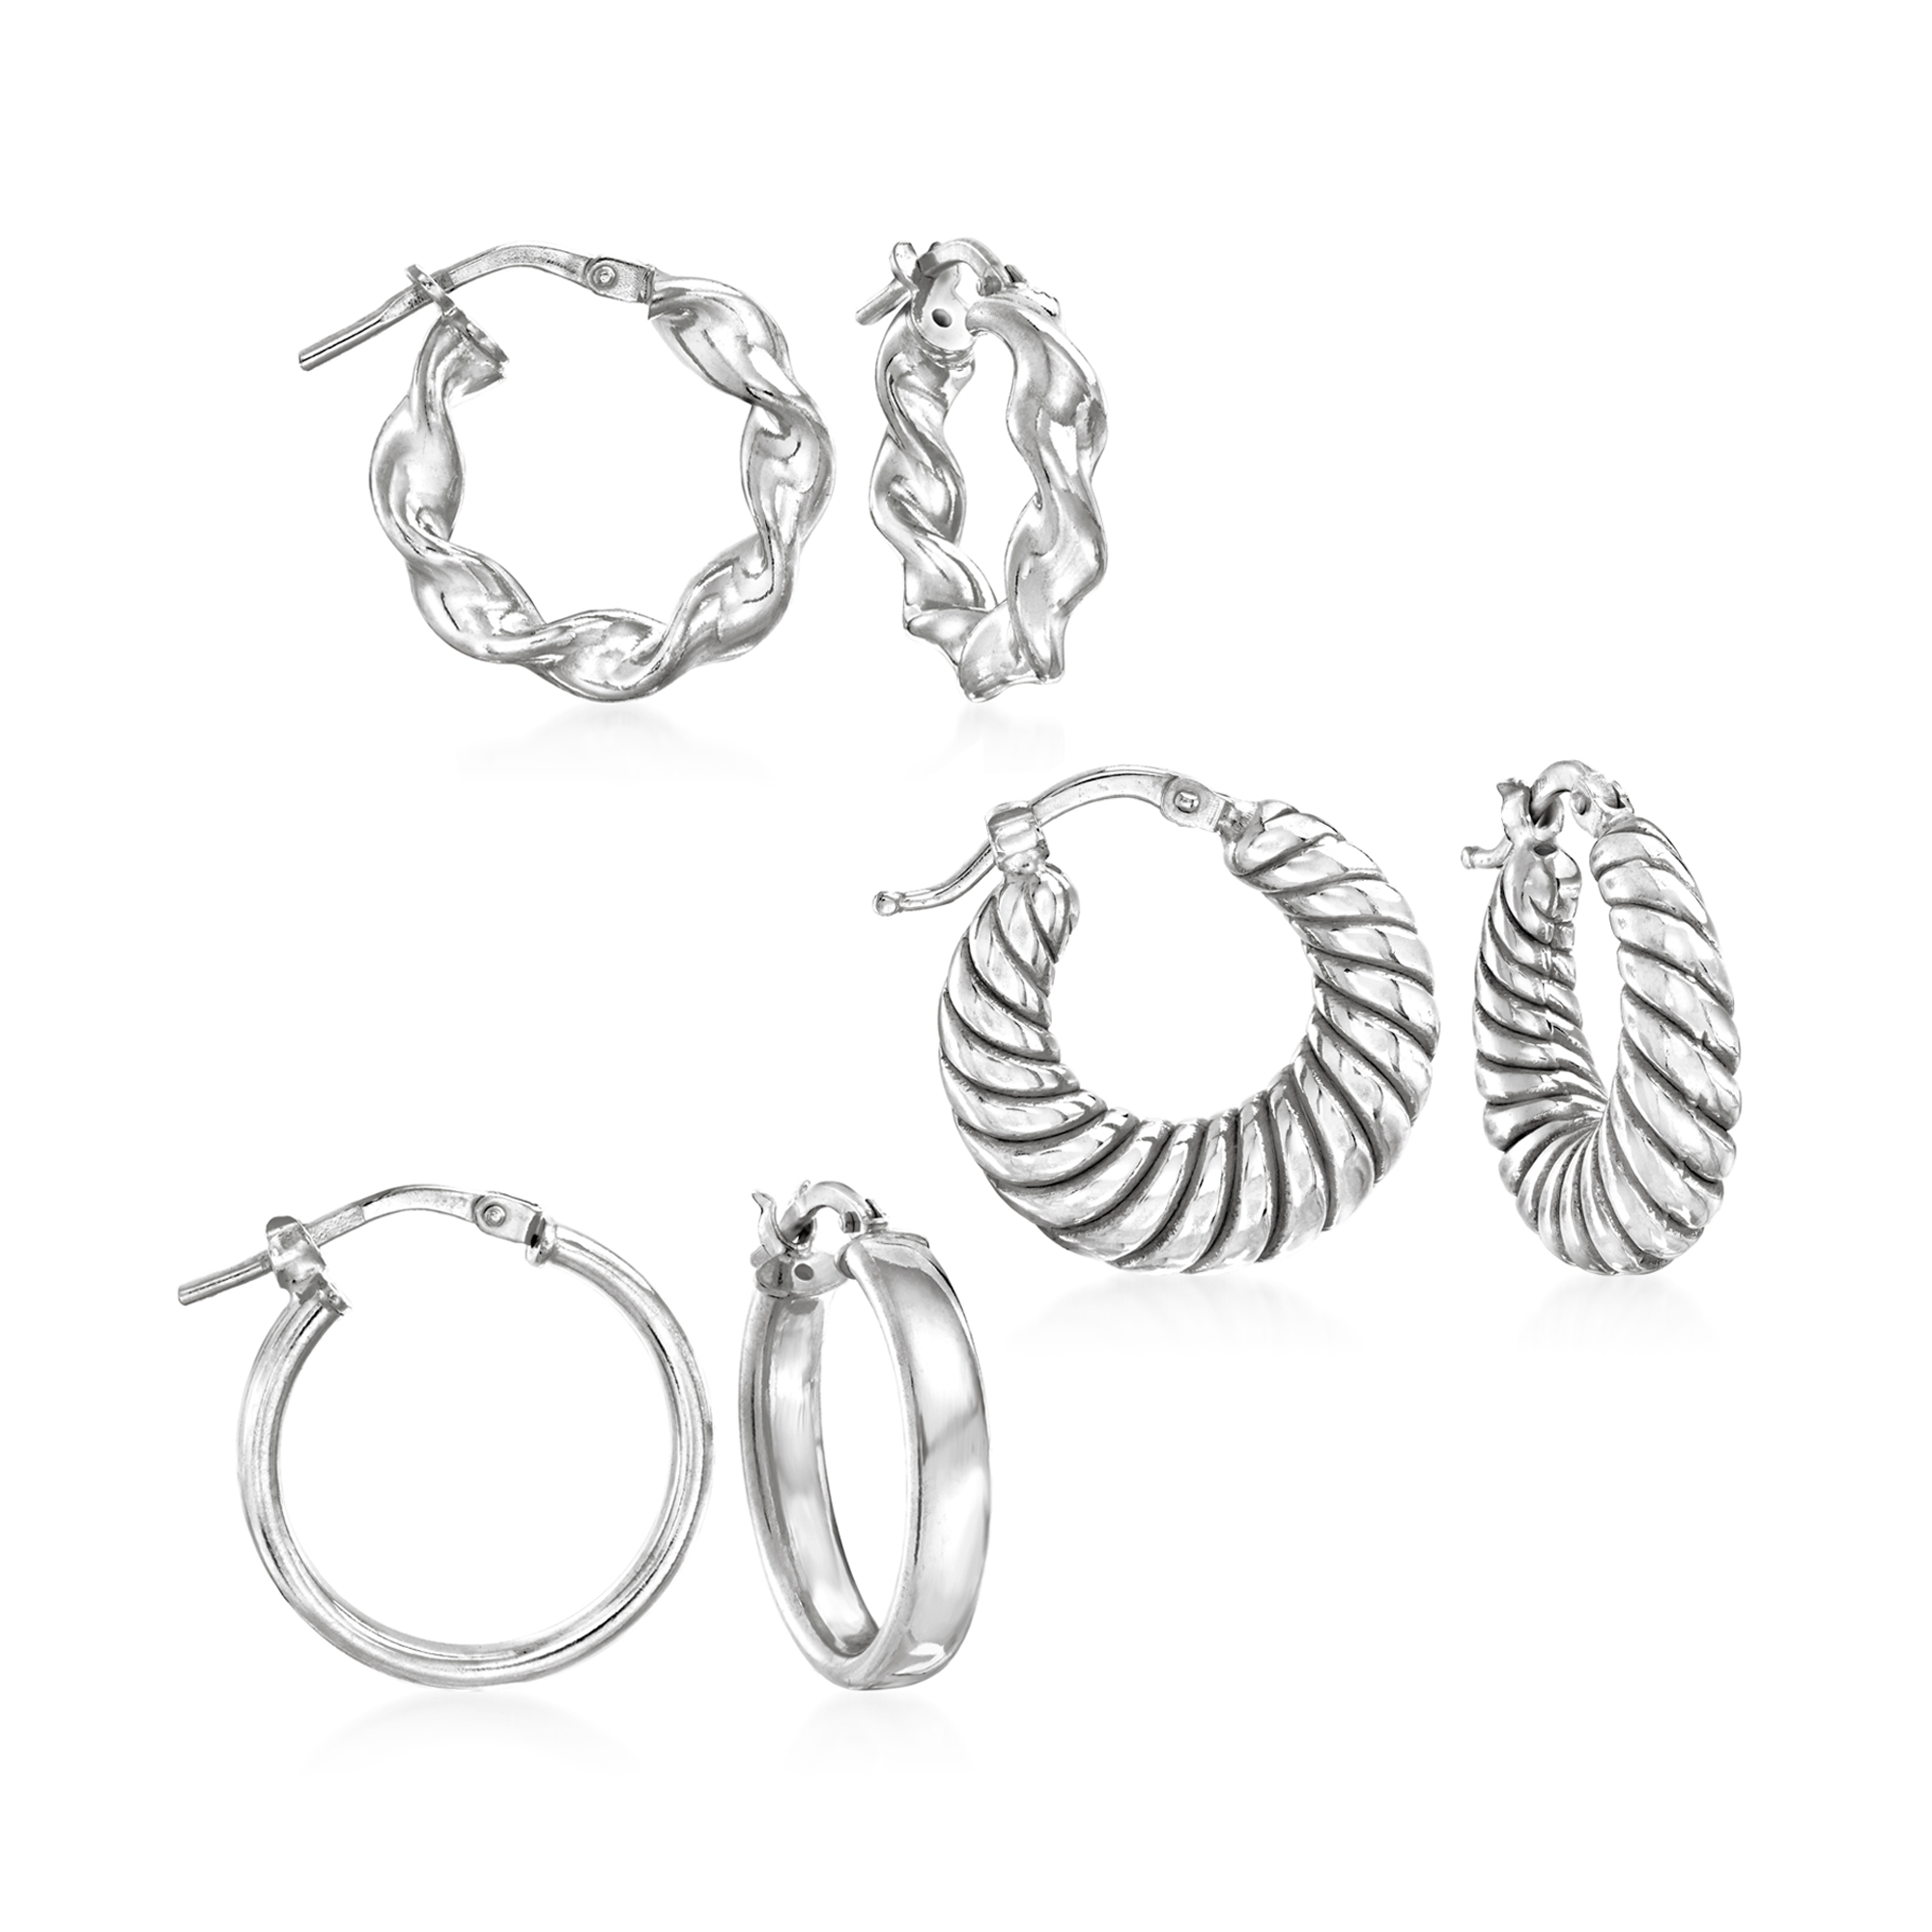 Italian Sterling Silver Jewelry Set: Three Pairs of Hoop Earrings 